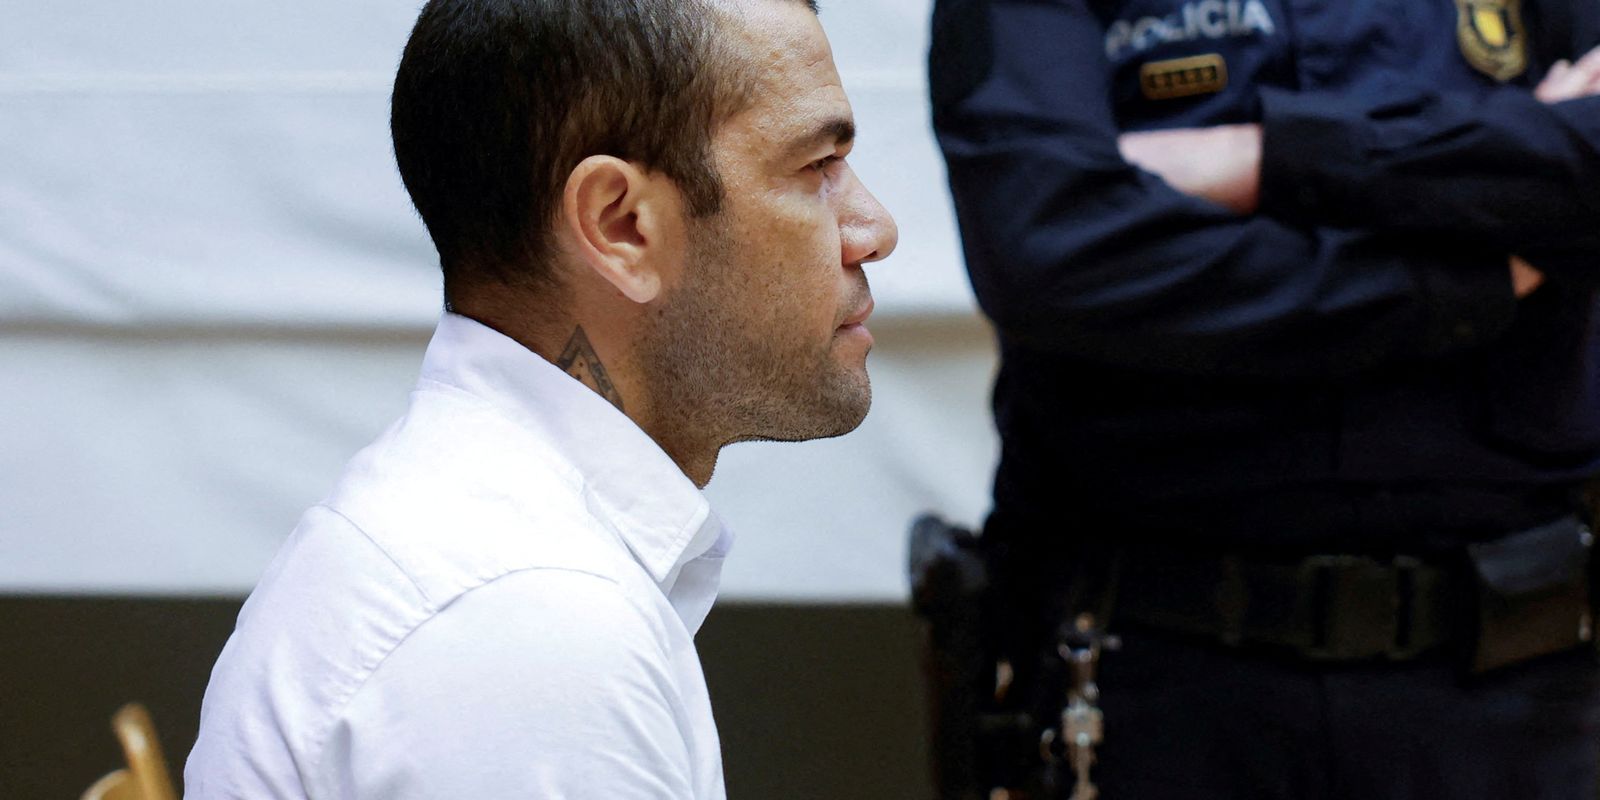 Daniel Alves nega agressão sexual em tribunal de Barcelona